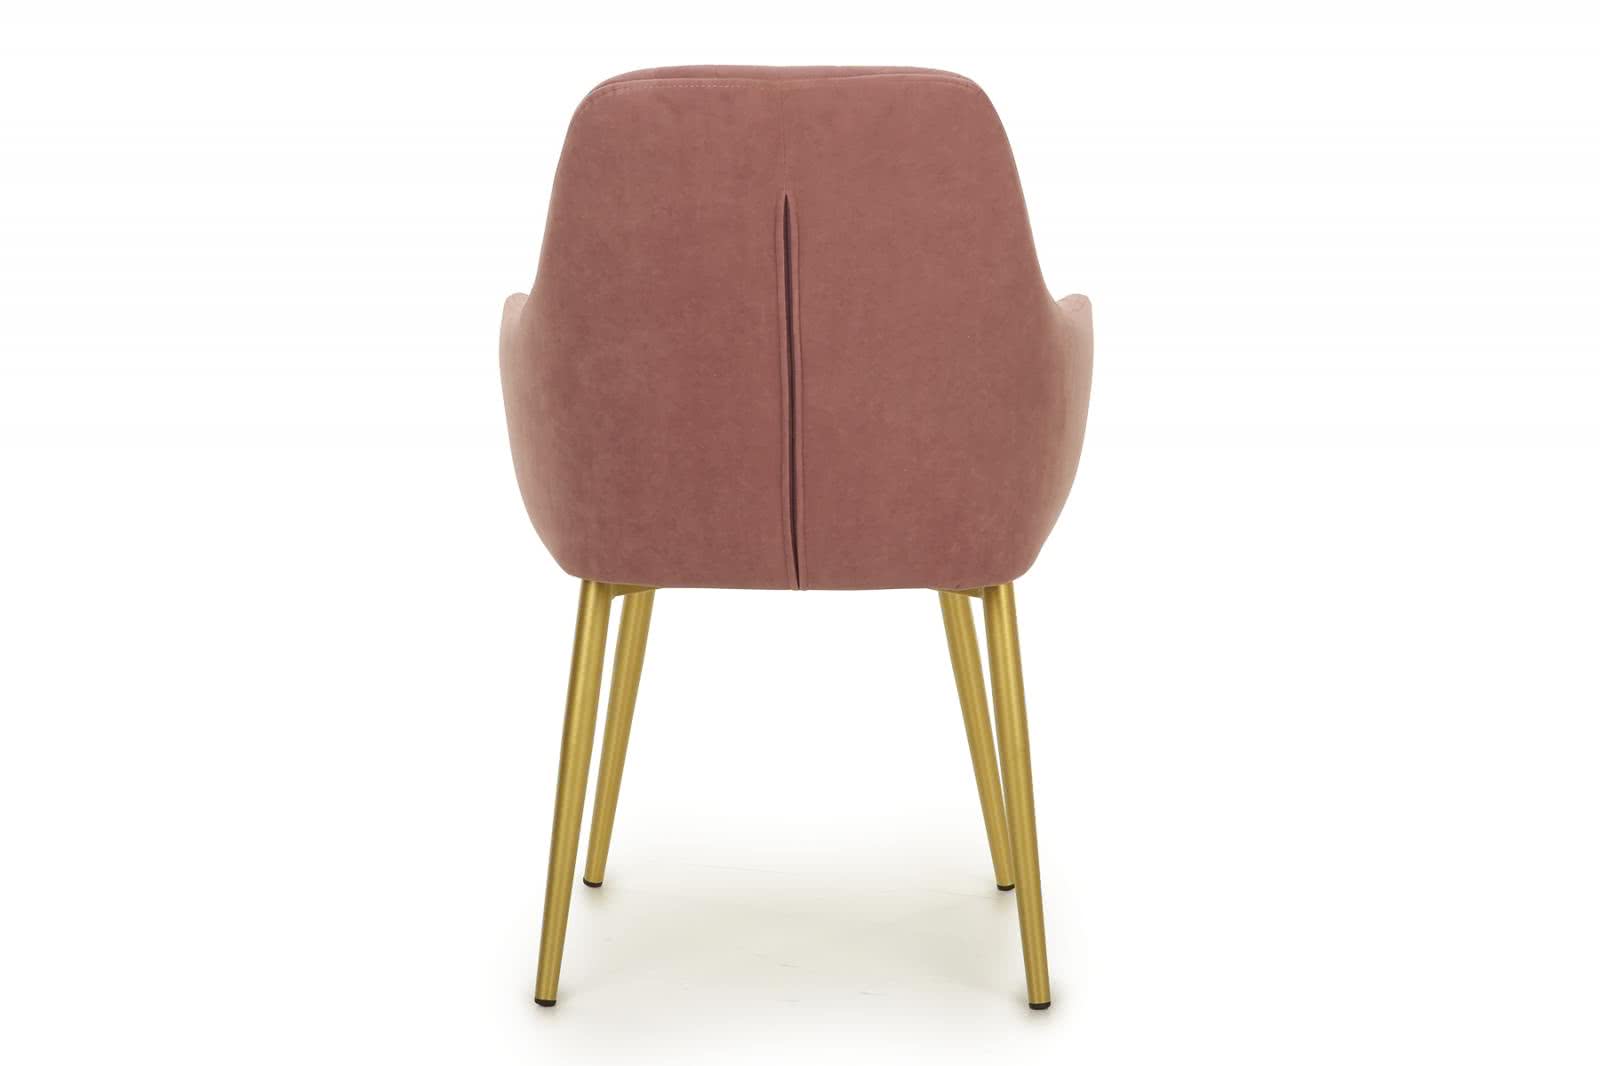 Купить стул СтолЛайн Стул СтолЛайн Роден Тедди 633 пастельно - сиреневый/золотой дешево на официальном сайте